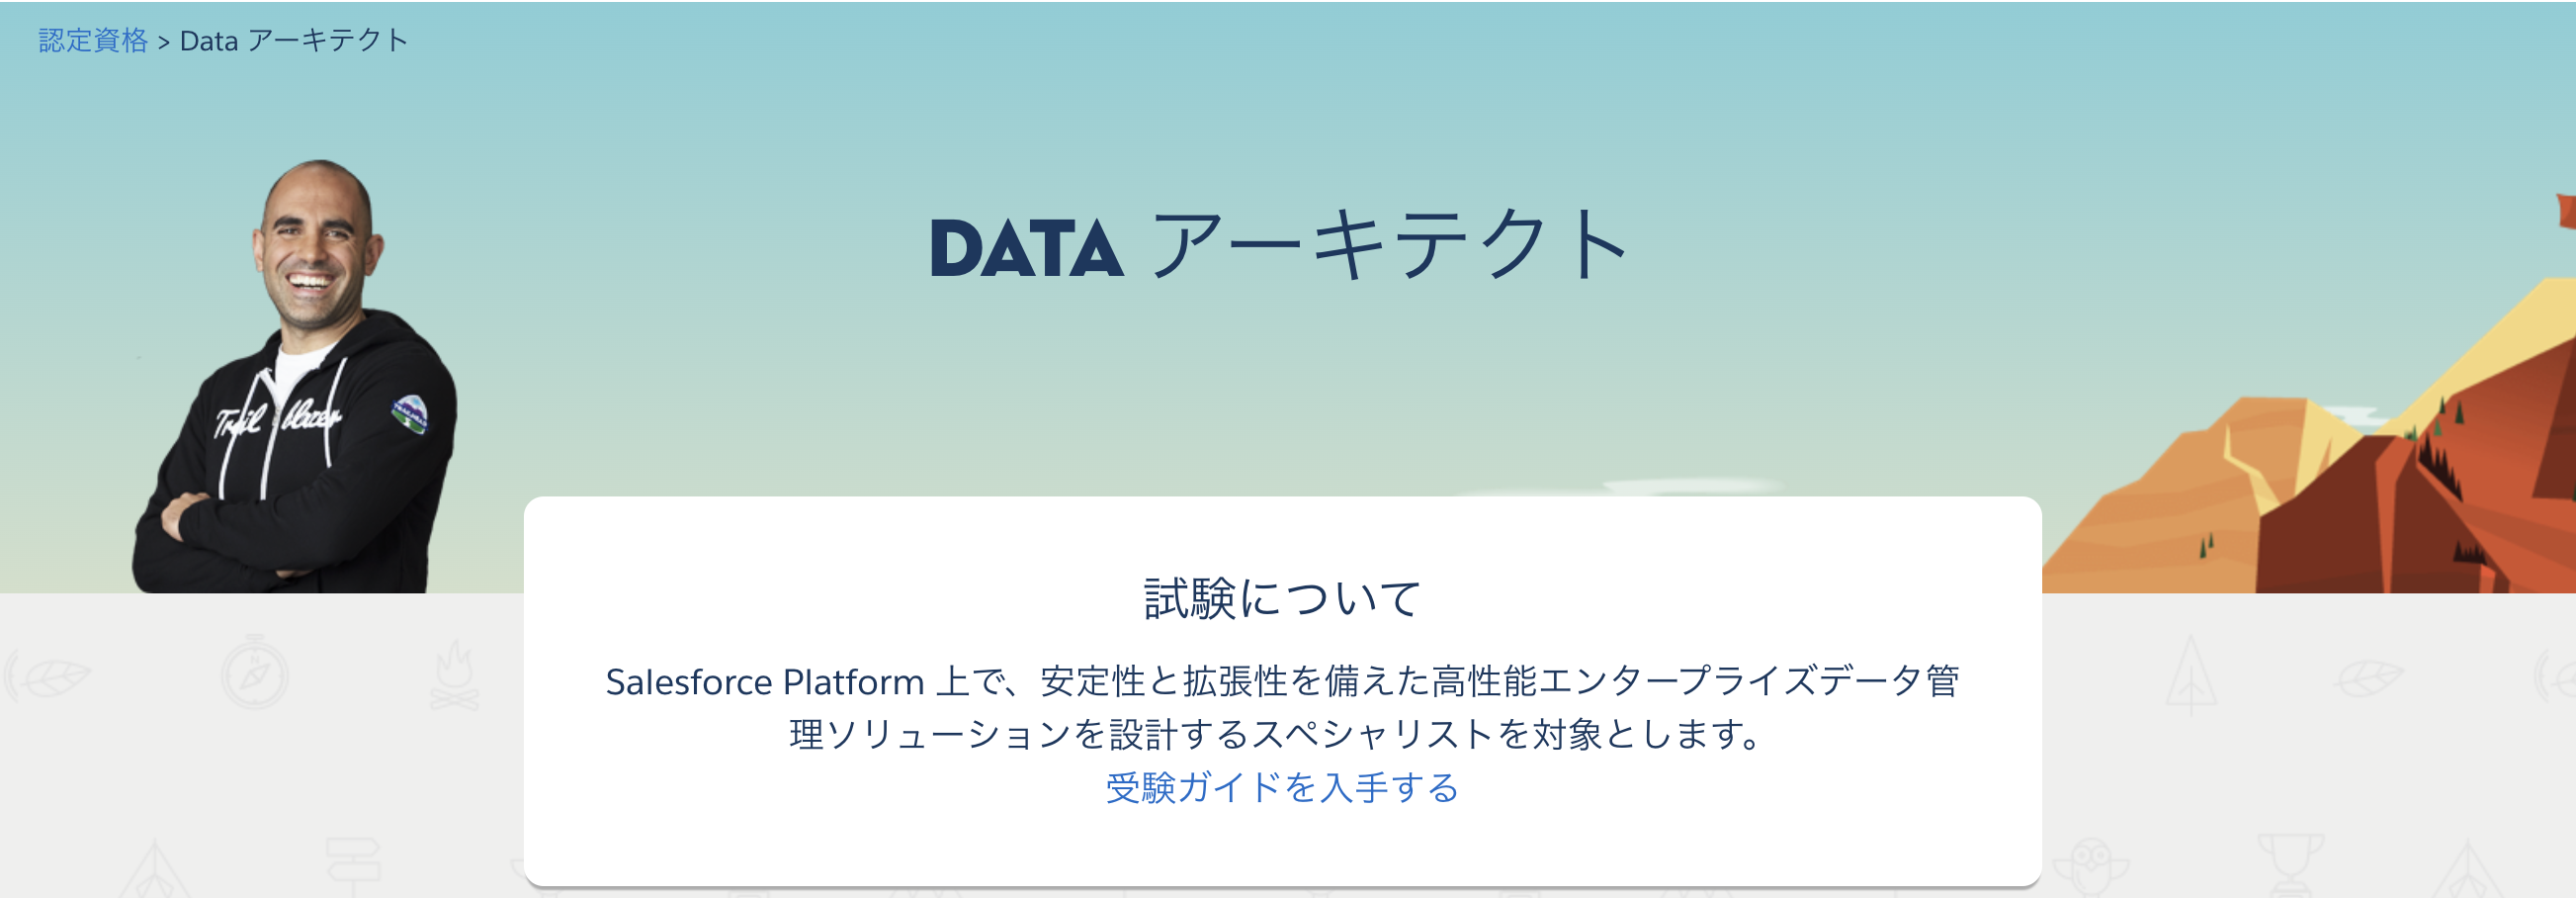 Salesforce 認定 Data アーキテクト